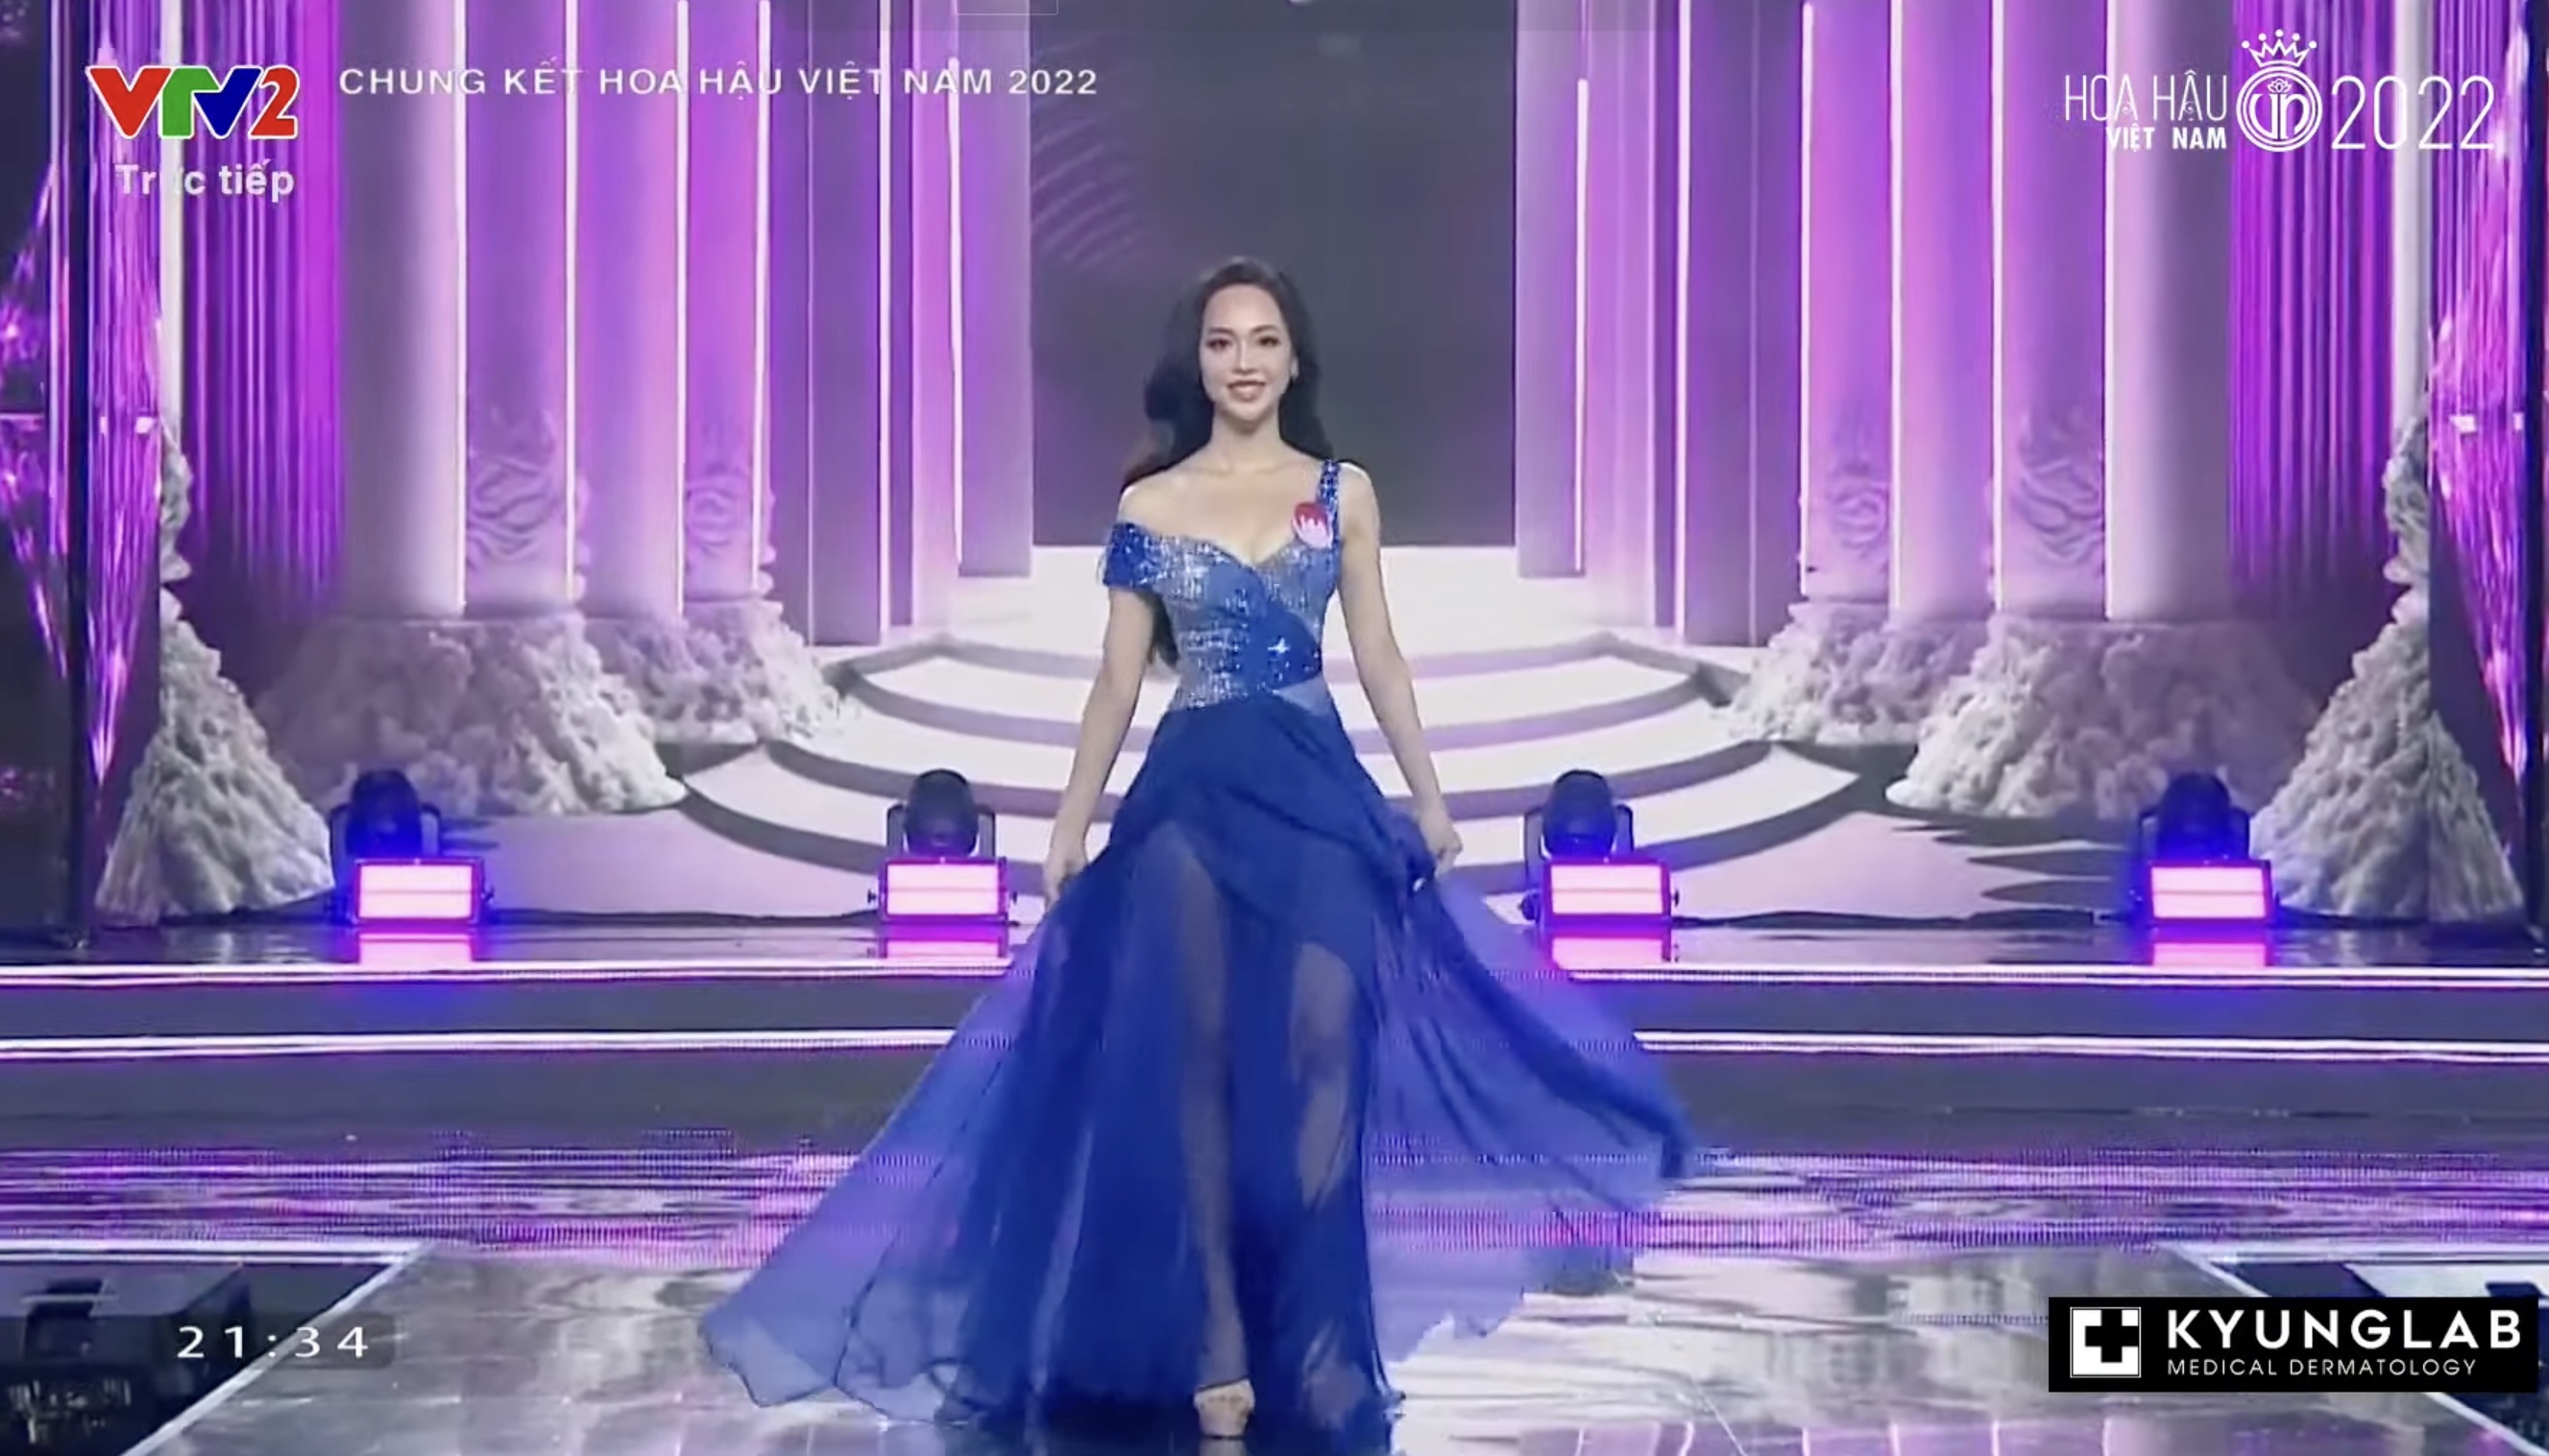 Chung kết Hoa hậu Việt Nam 2022: Tân Hoa hậu chính thức gọi tên Huỳnh Thị Thanh Thuỷ - 24